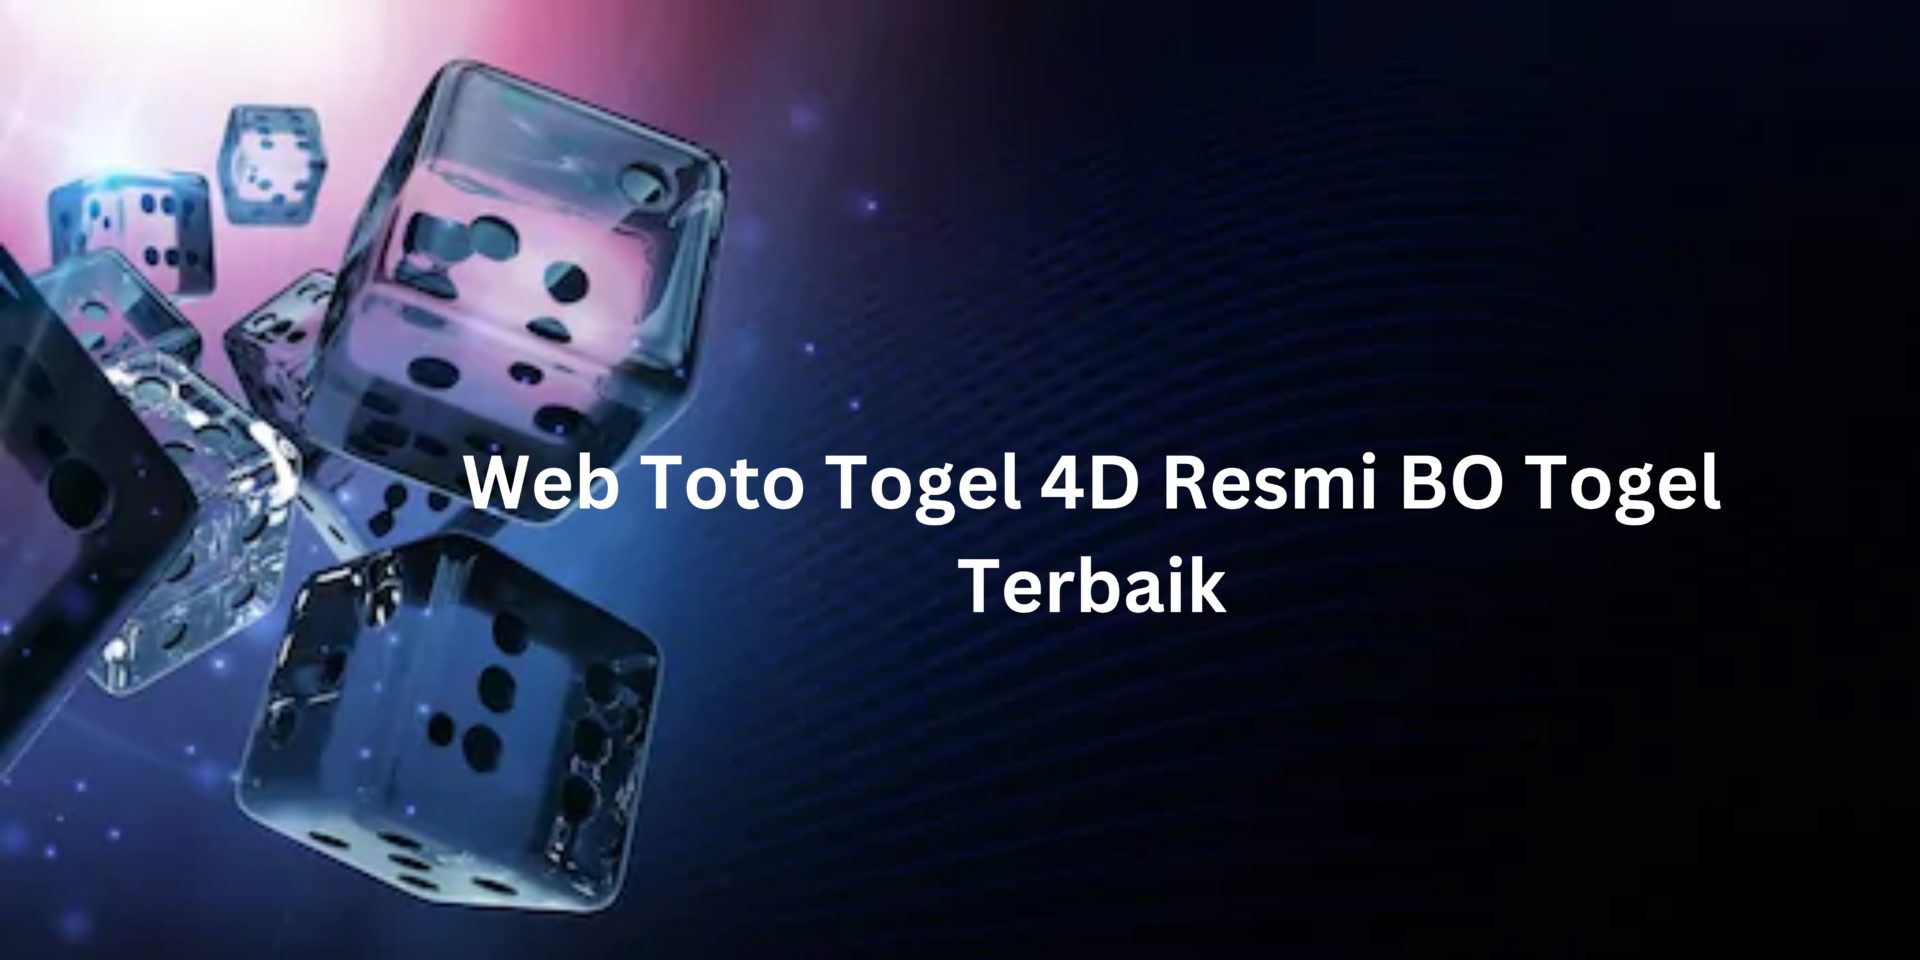 Web Toto Togel 4D Resmi BO Togel Terbaik